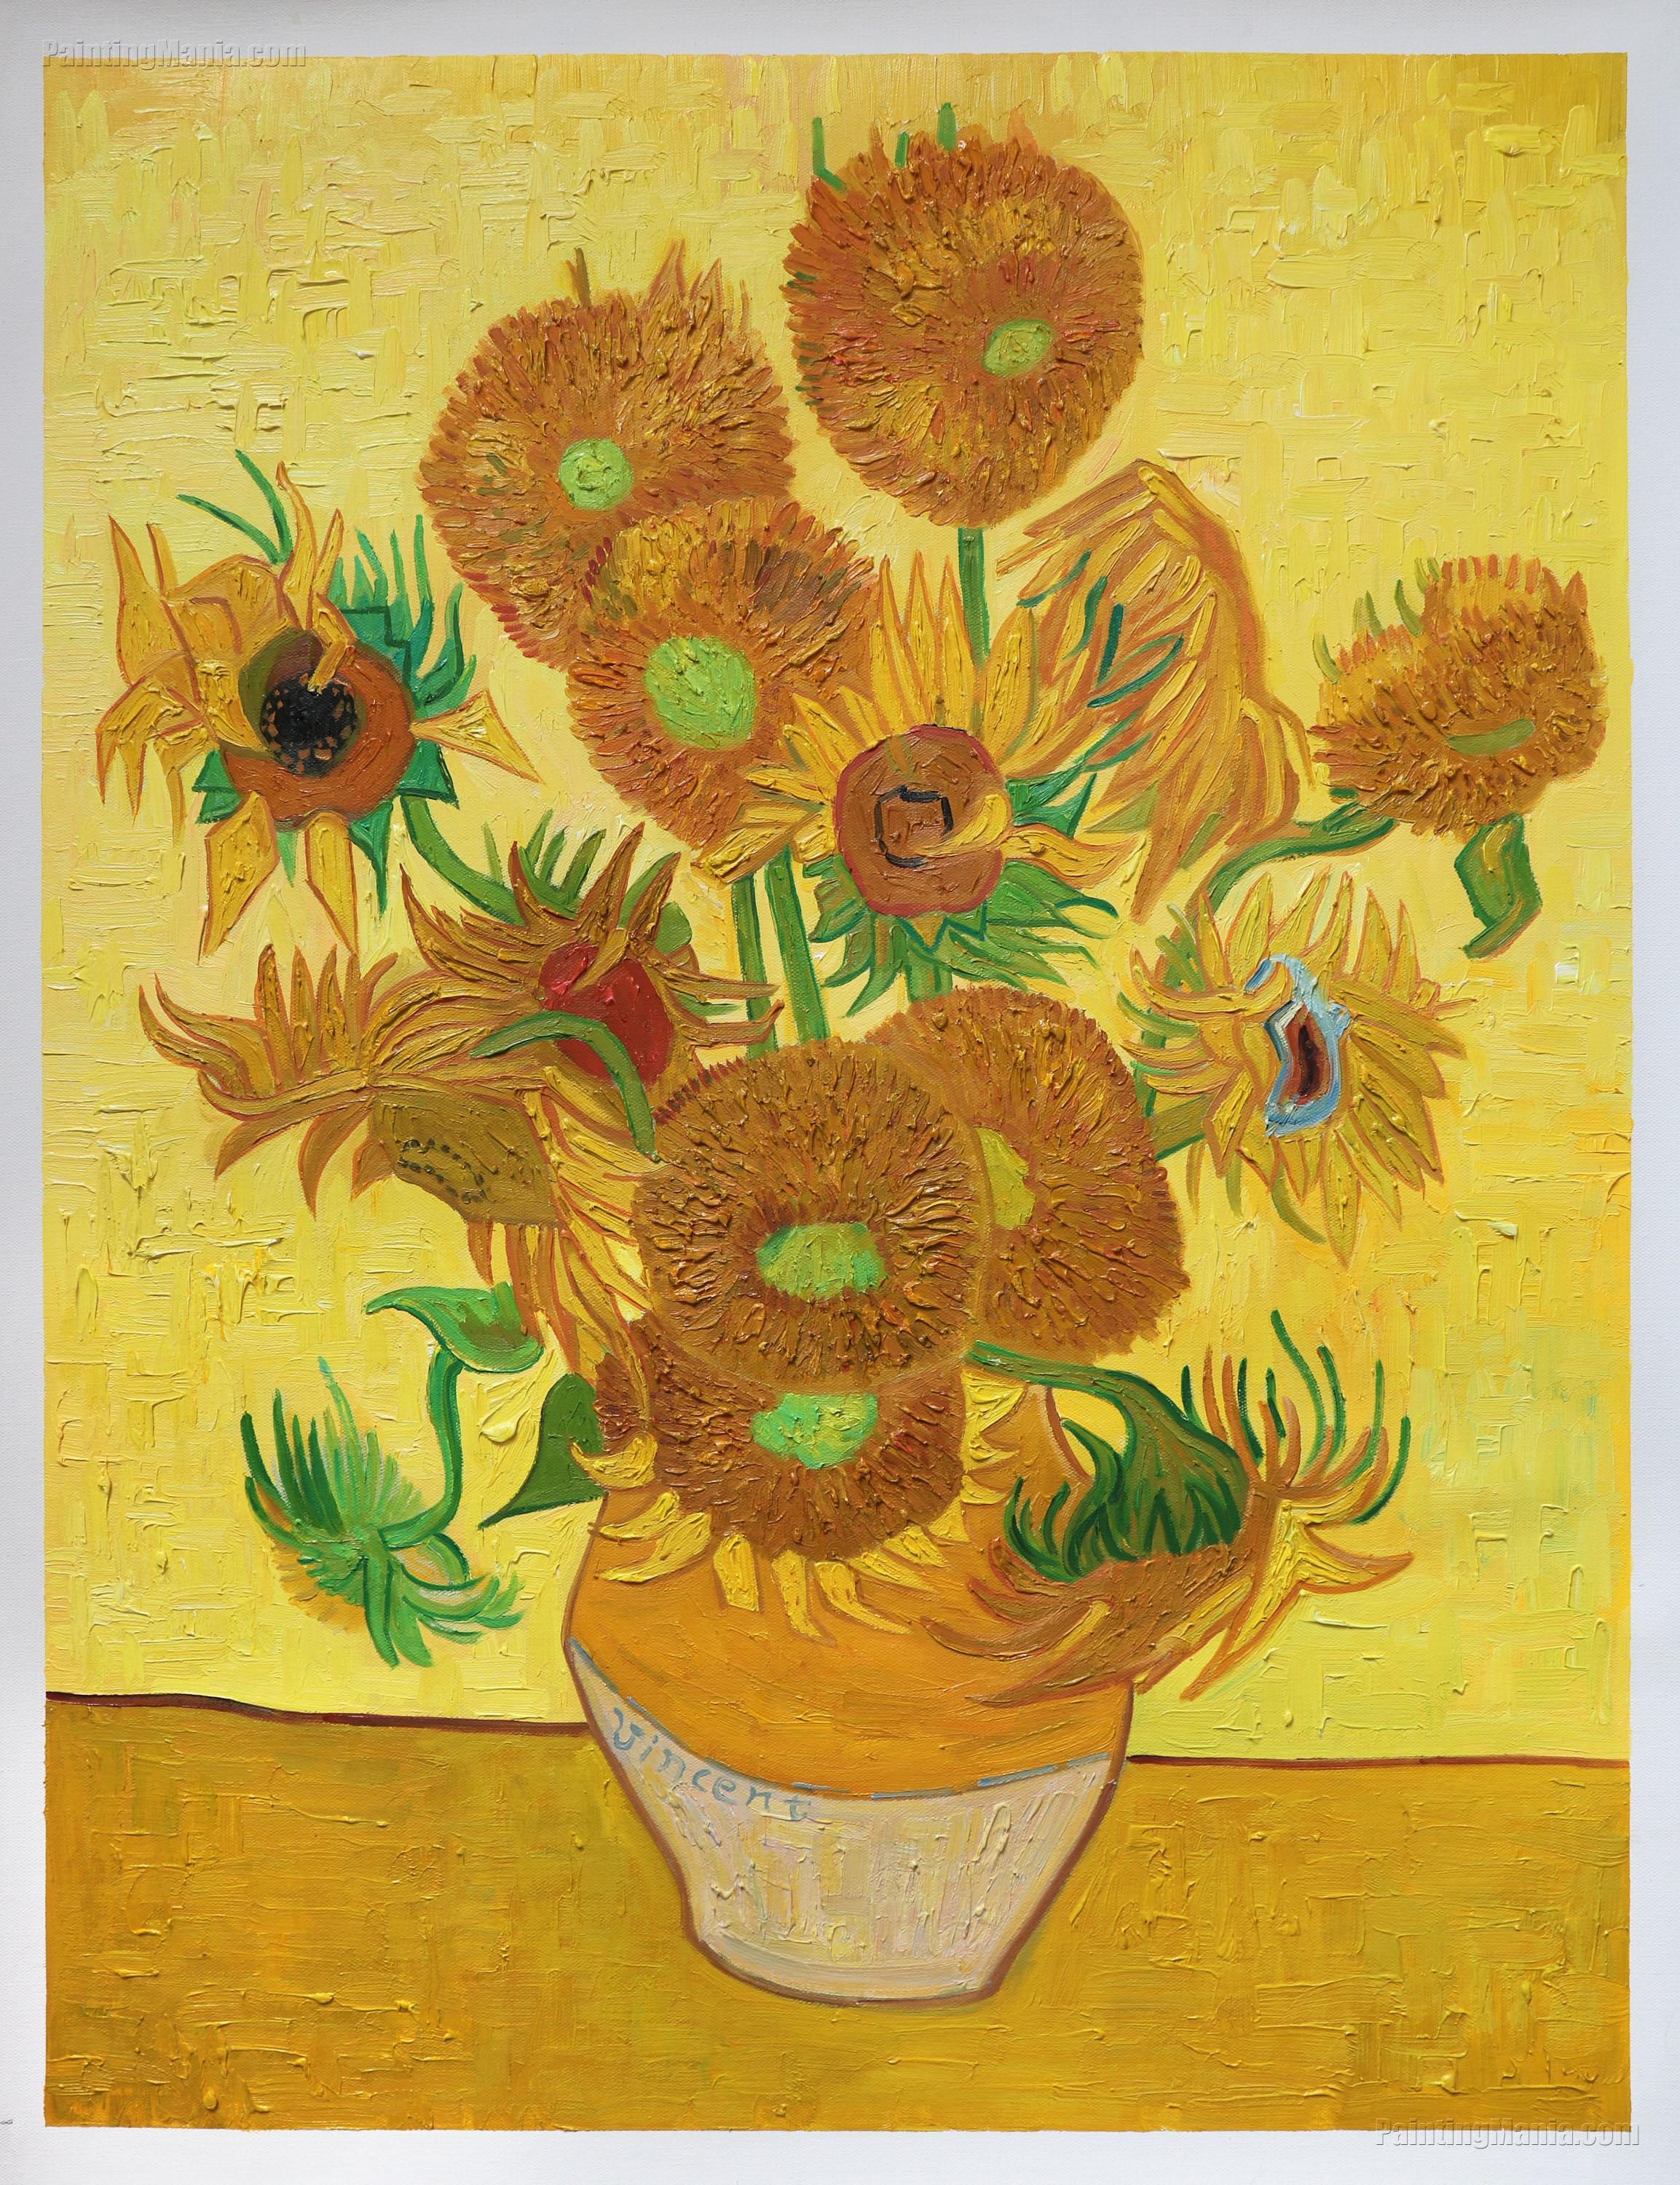 van gogh paintings sunflowers